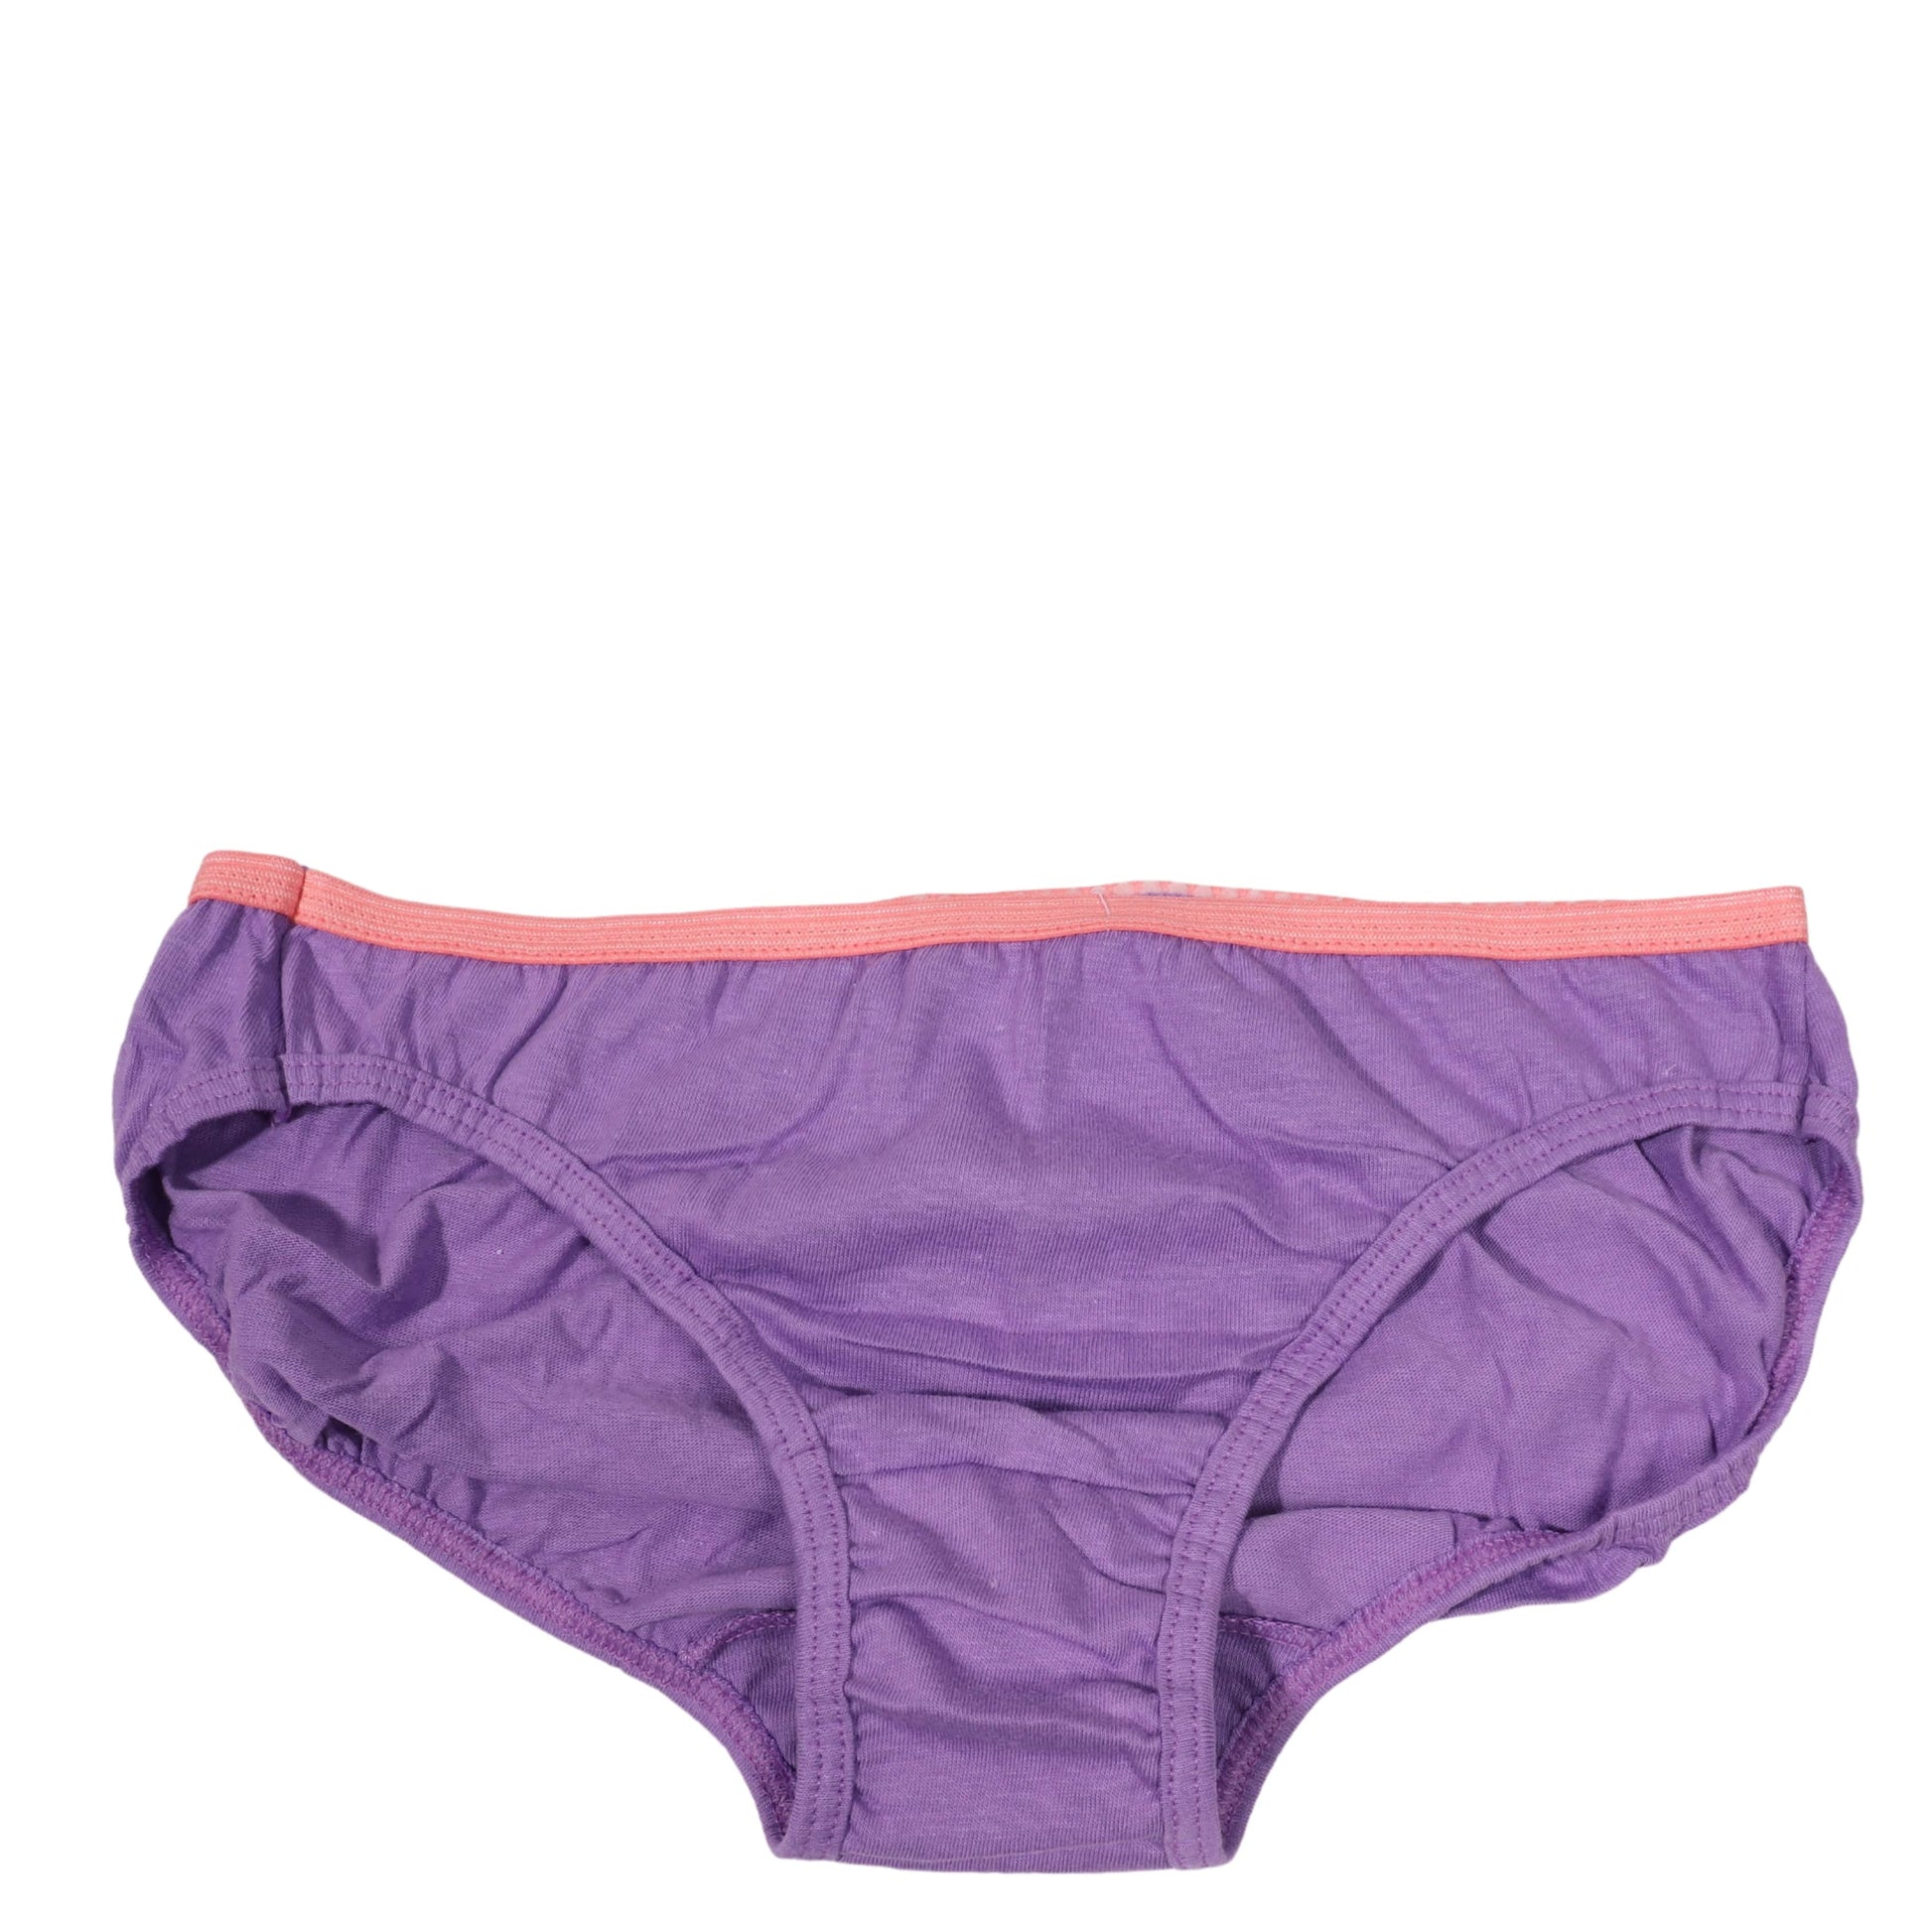 https://brandsandbeyond.me/cdn/shop/products/hanes-girls-underwear-hanes-casual-panties-31042536439843.jpg?v=1670399769&width=1946